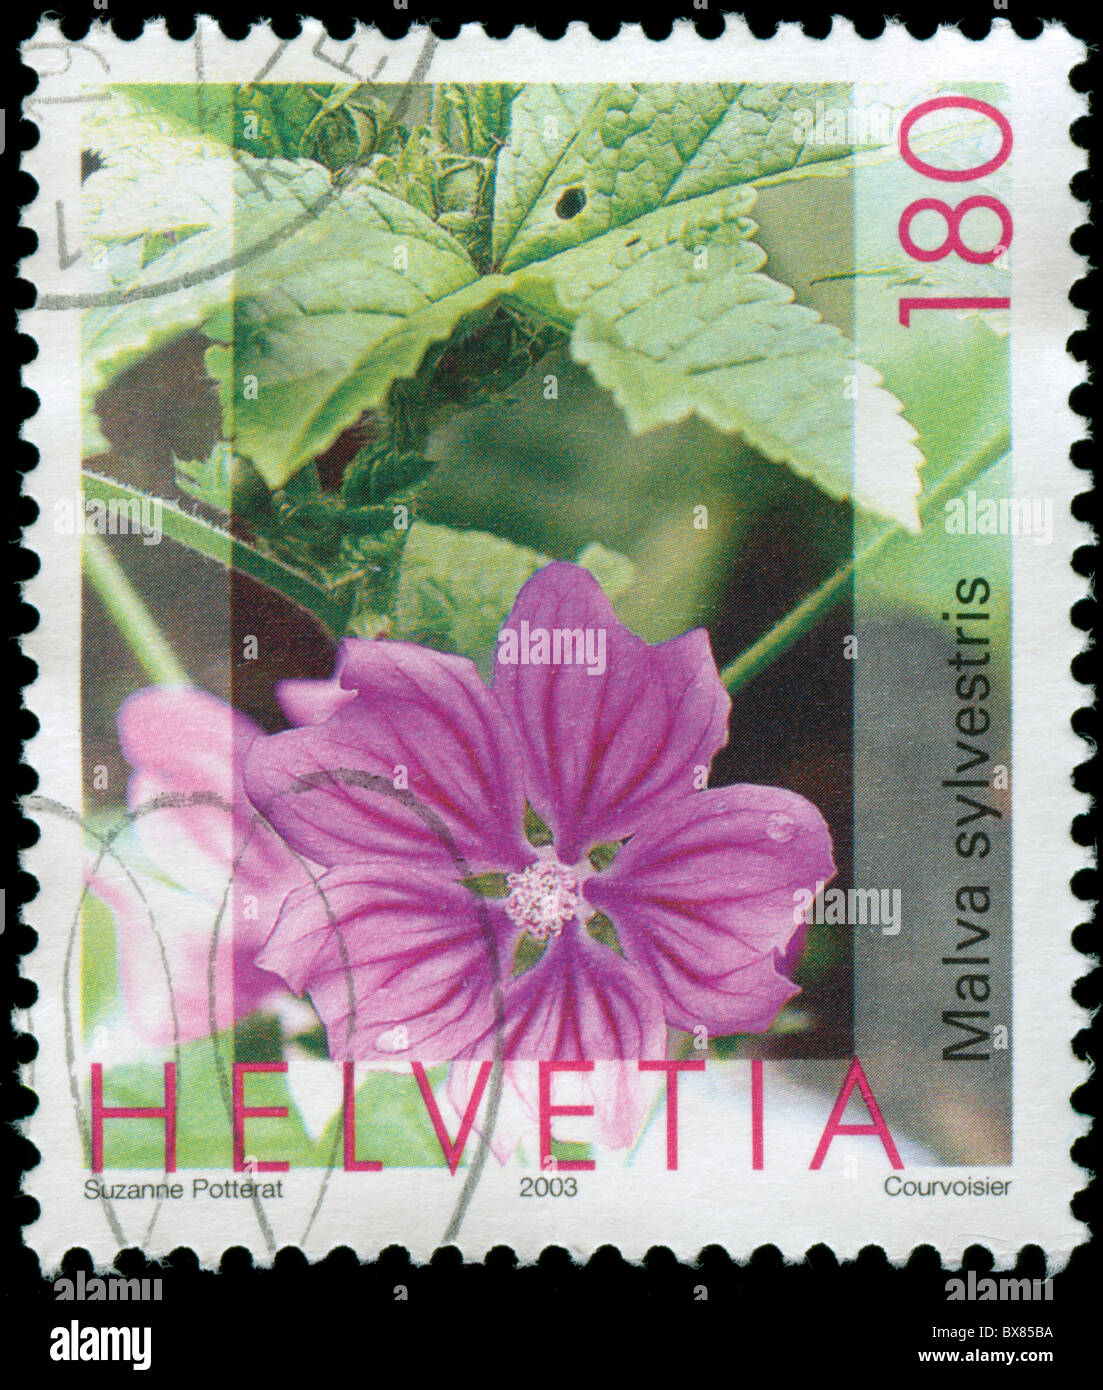 Schweizer Briefmarke mit Blumenmotiv Stockfoto